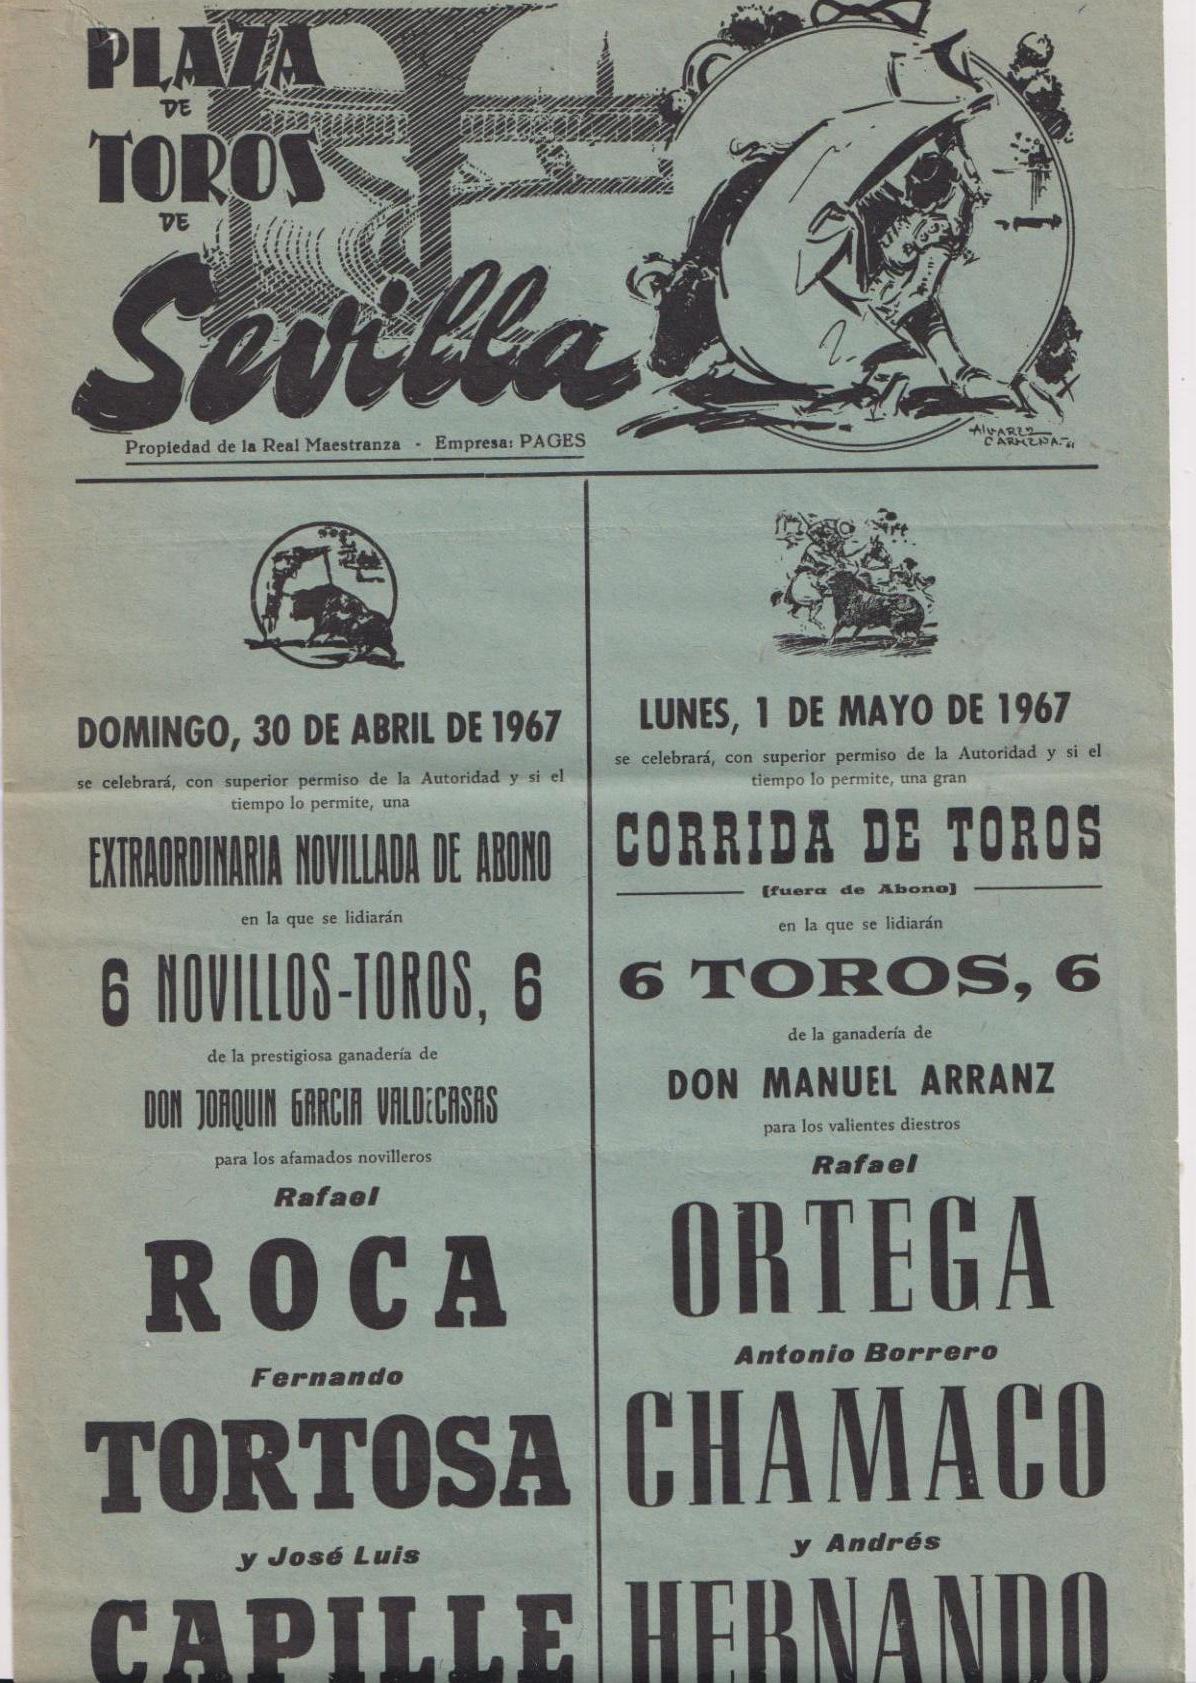 Cartel (45x21) Plaza de Toros de Sevilla 30 de Abril y 1 de mayo de 1967. Extraordinaria Novillada y Corrida de Toros